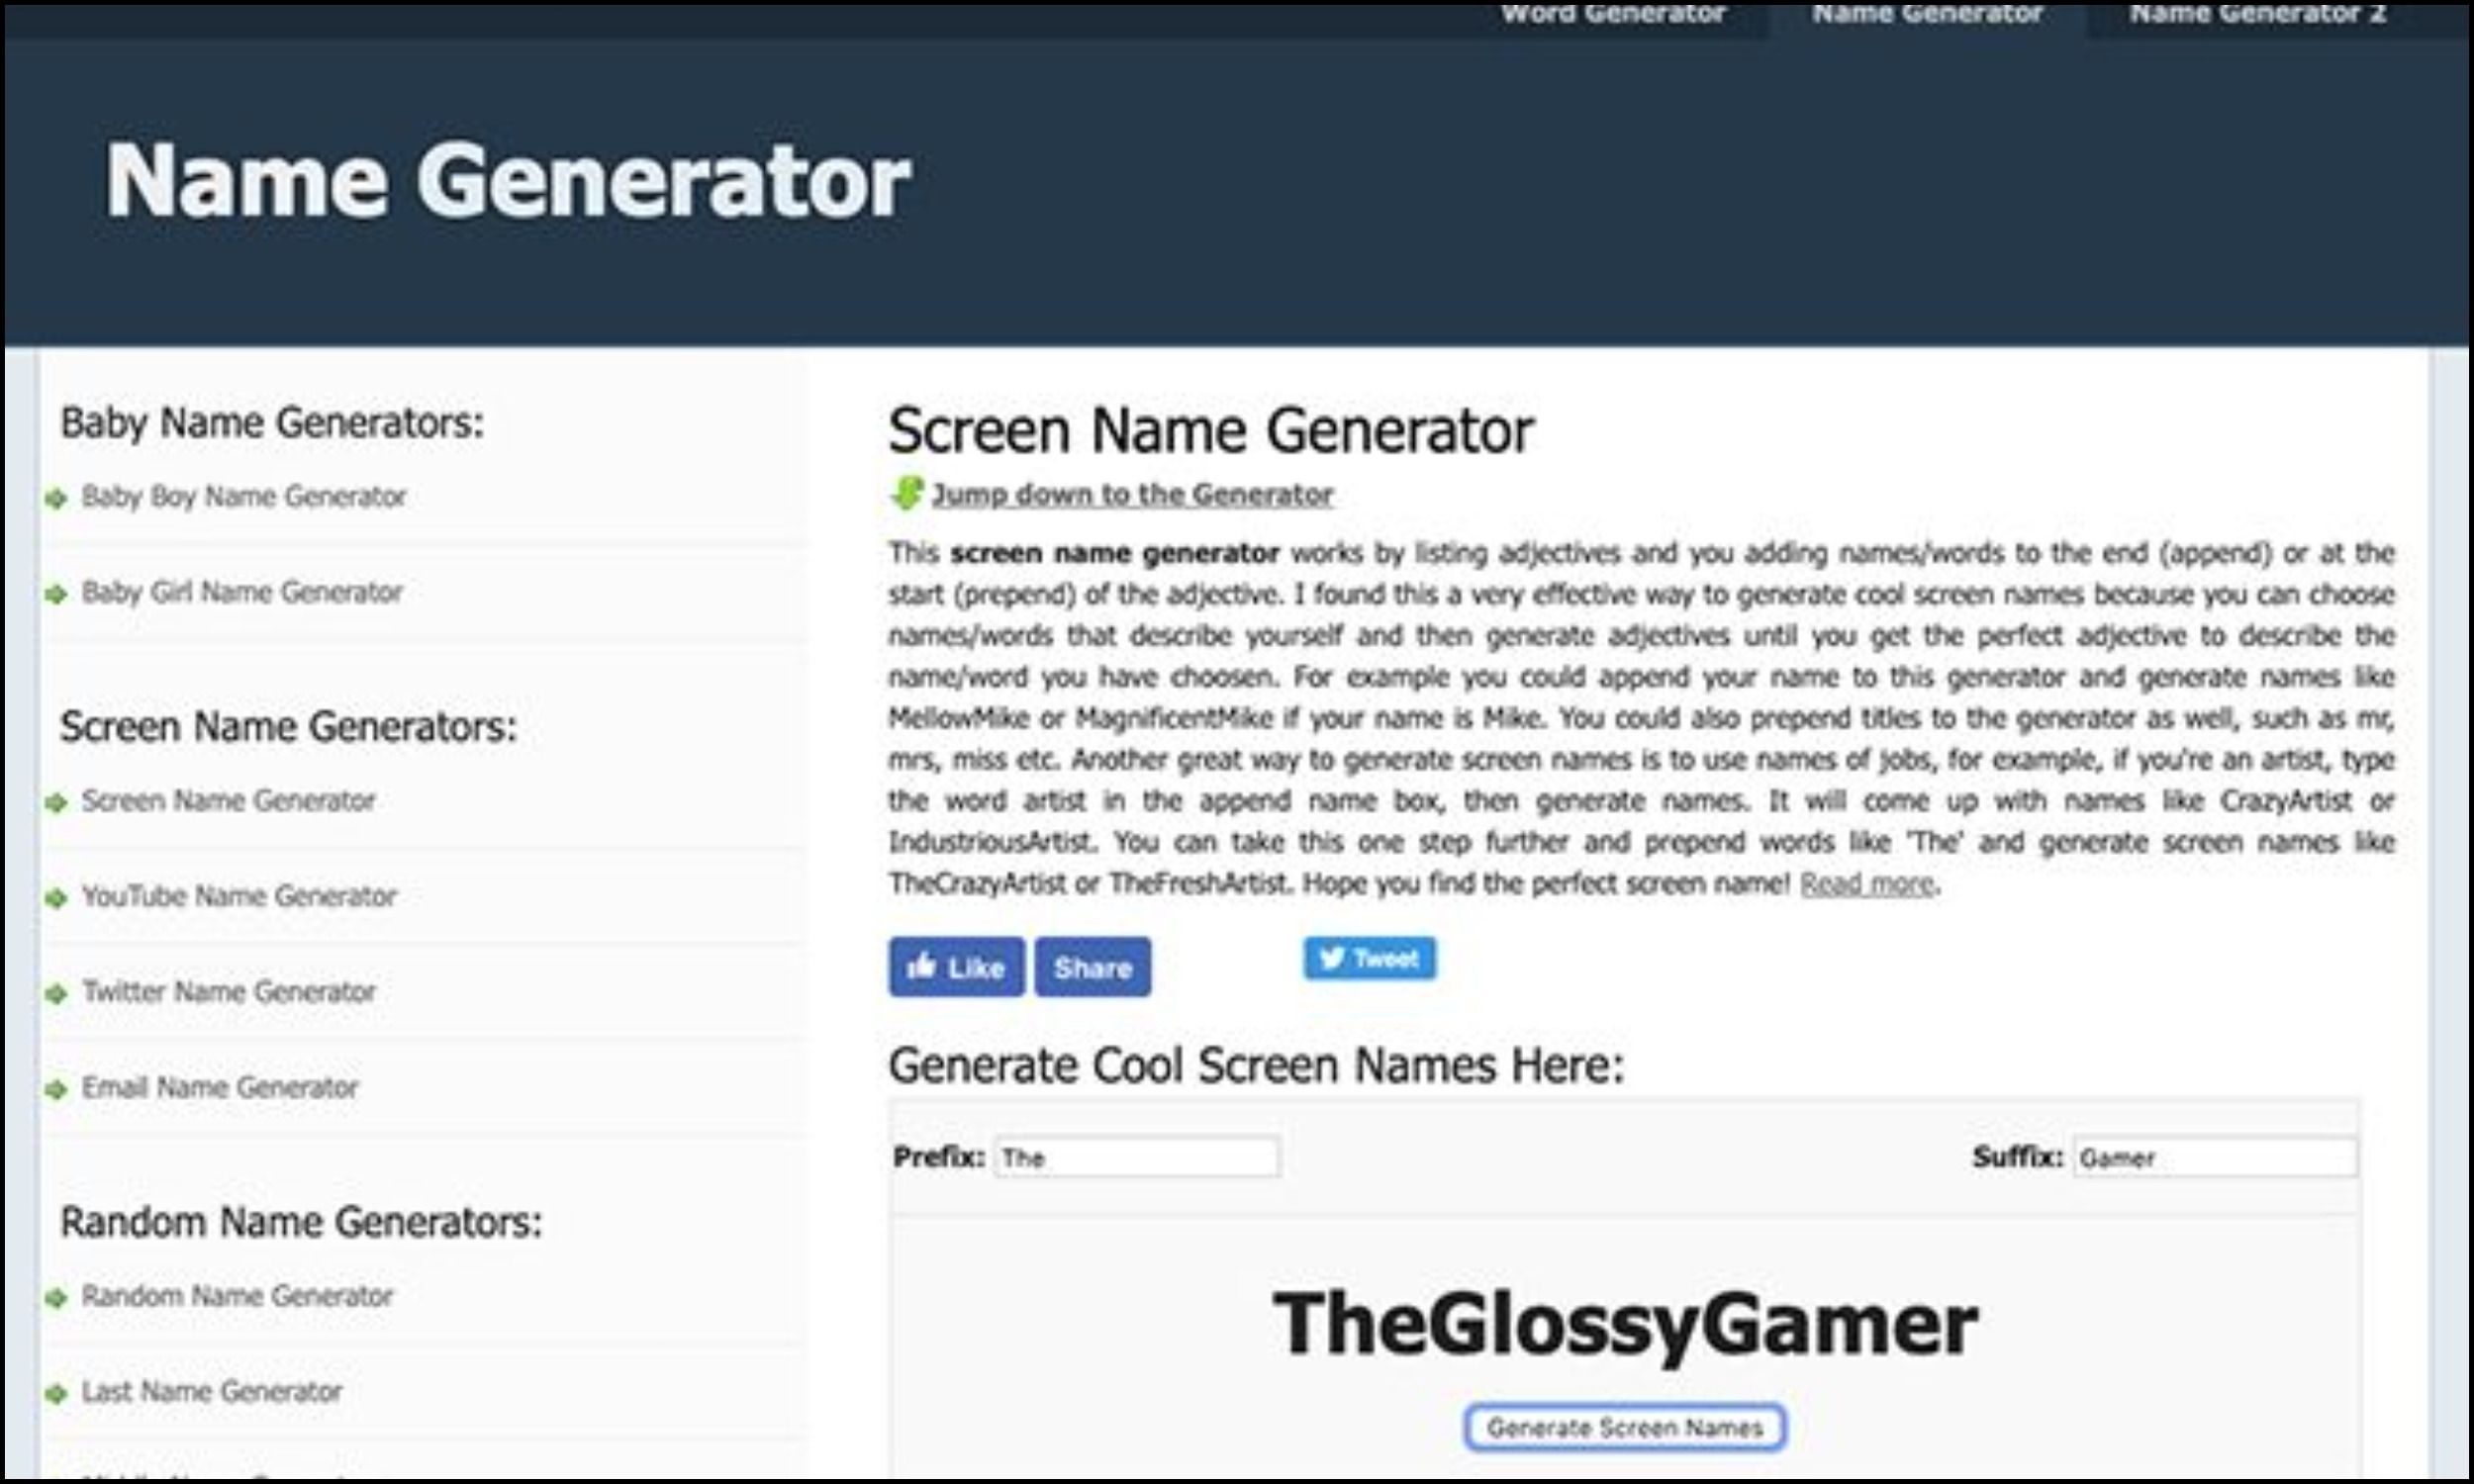 Name generated in Screen Name Generator